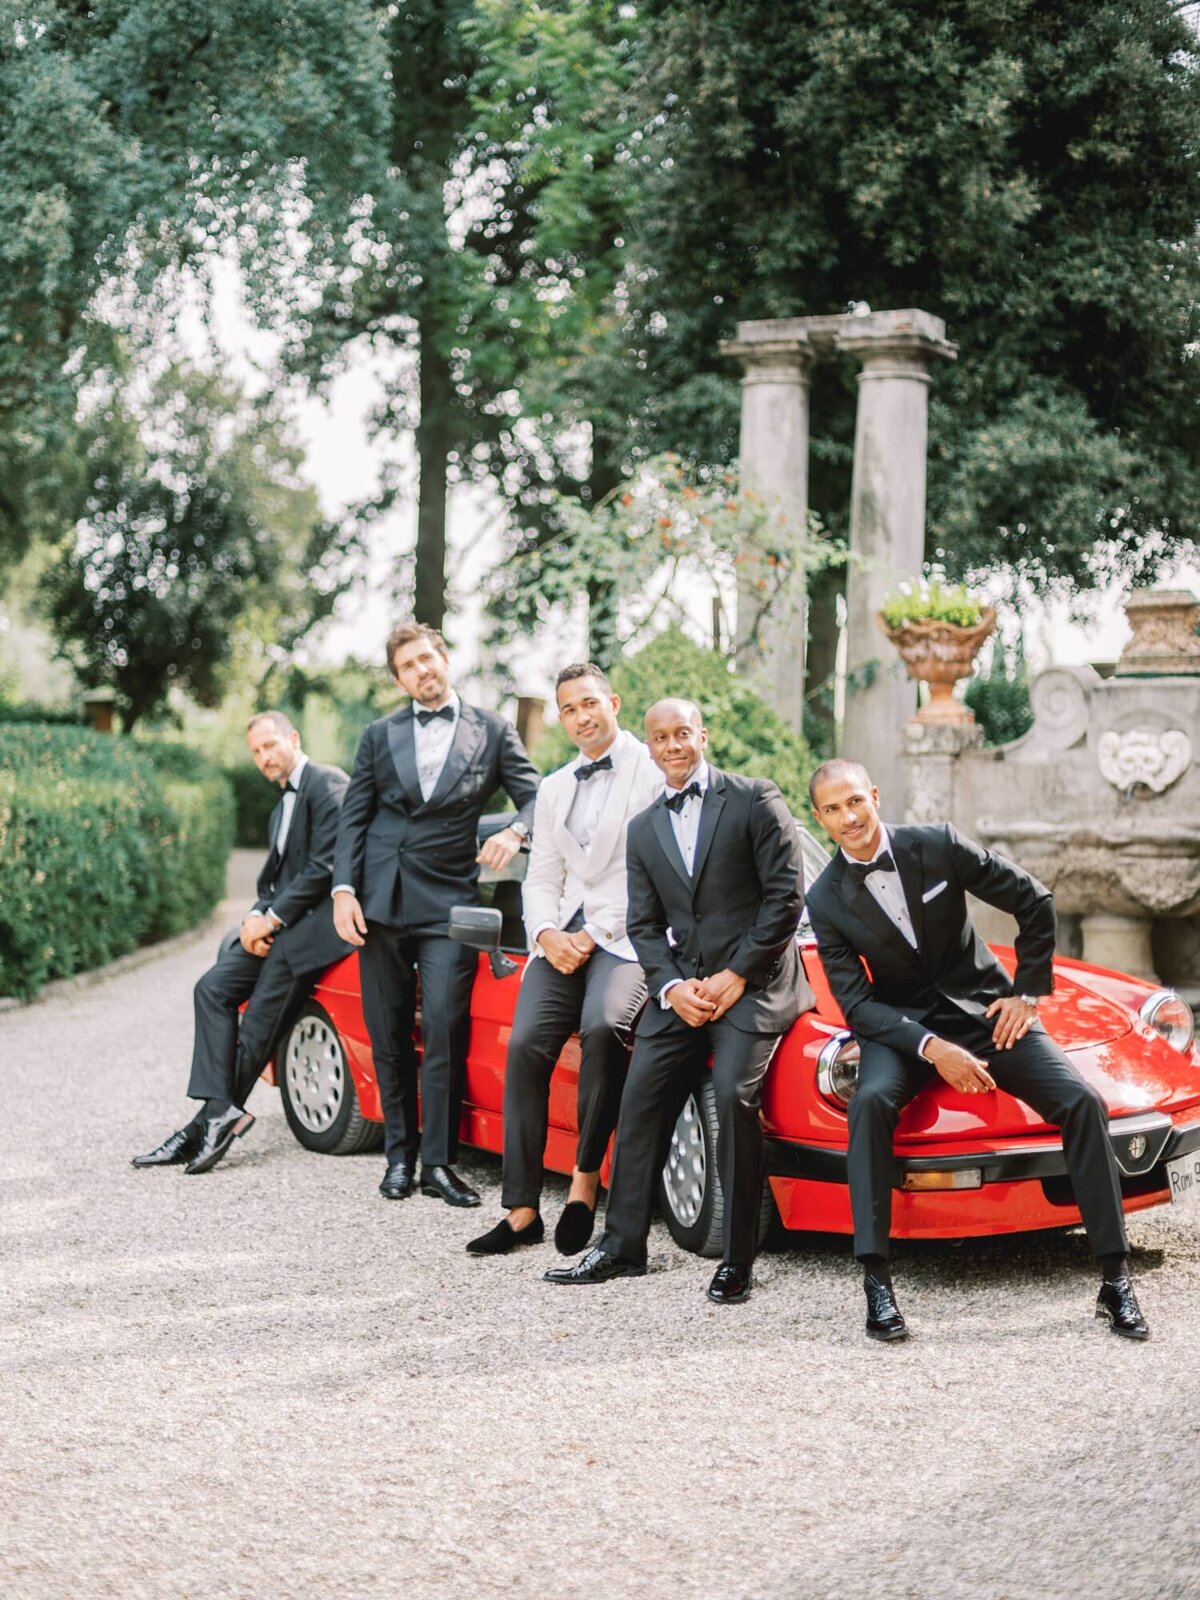 AndreasKGeorgiou-Tuscany-wedding-Italy-19